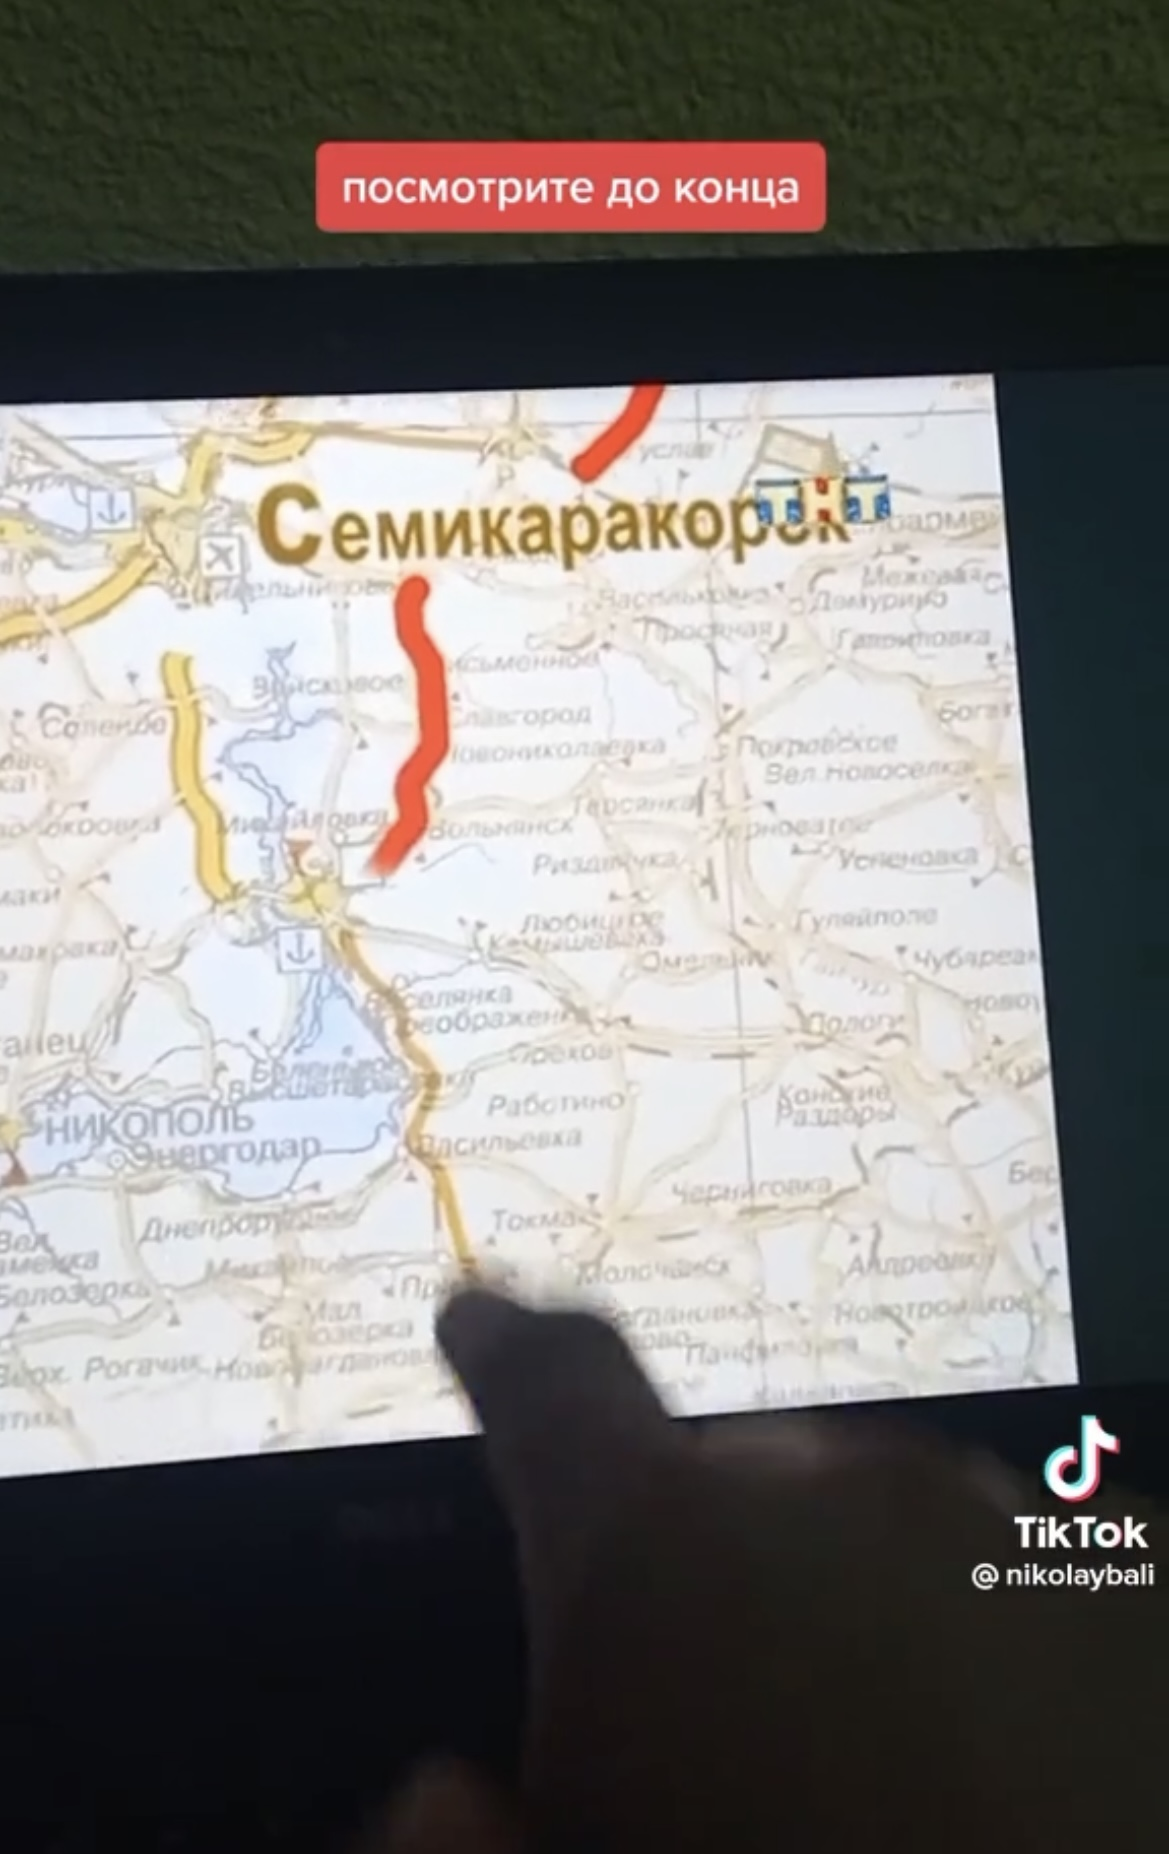 В сериале "Счастливы вместе" еще в 2006-м Россия "присвоила" себе украинские территории: Изюм, Бердянск и другие города показали на карте РФ. Видео